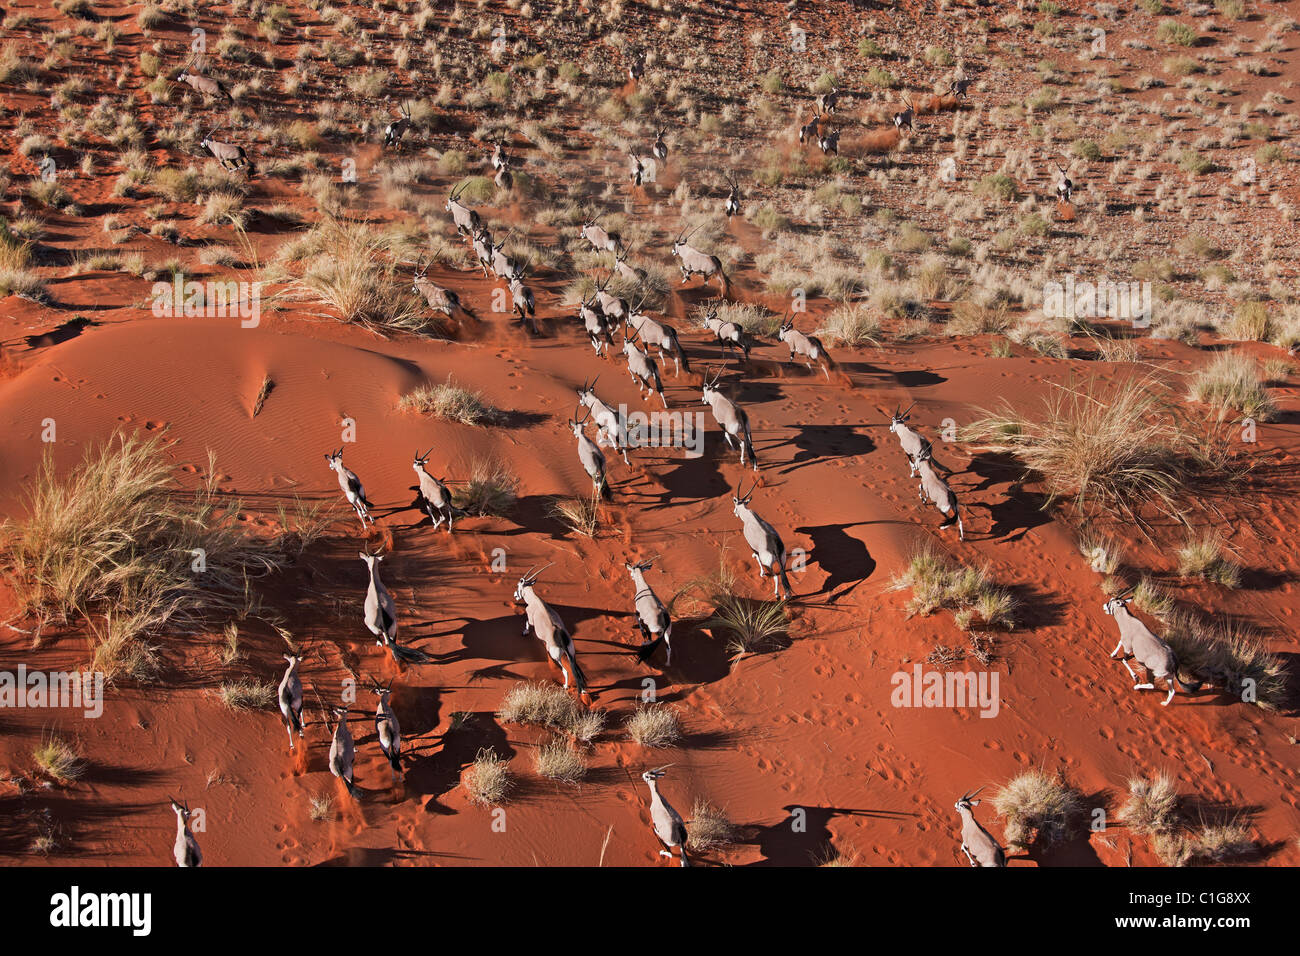 Gemsbok (Oryx gazella) dans le désert du désert namibien de l'habitat typique Banque D'Images